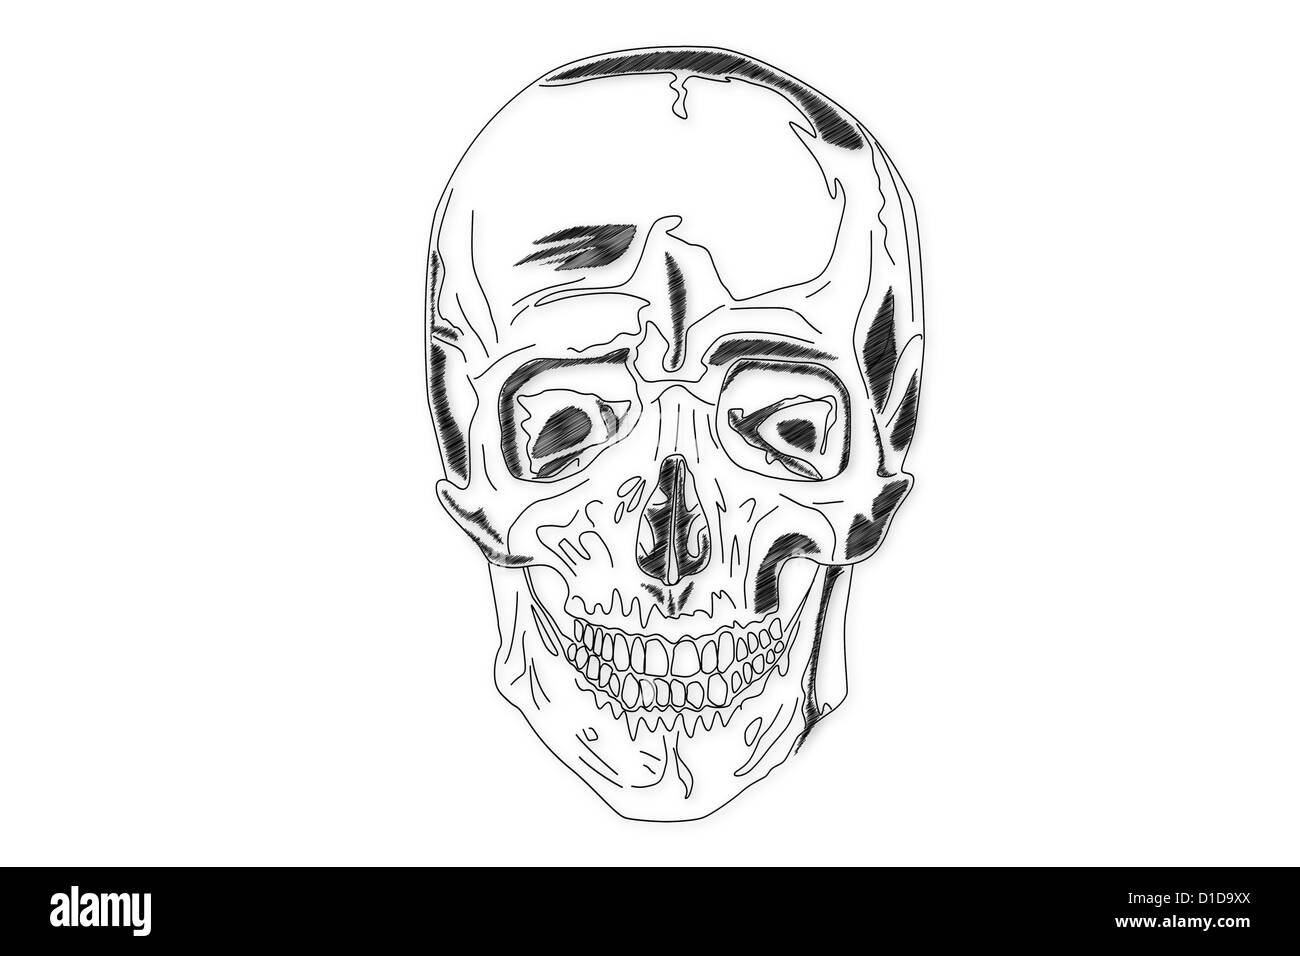 La structure du crâne humain Banque D'Images